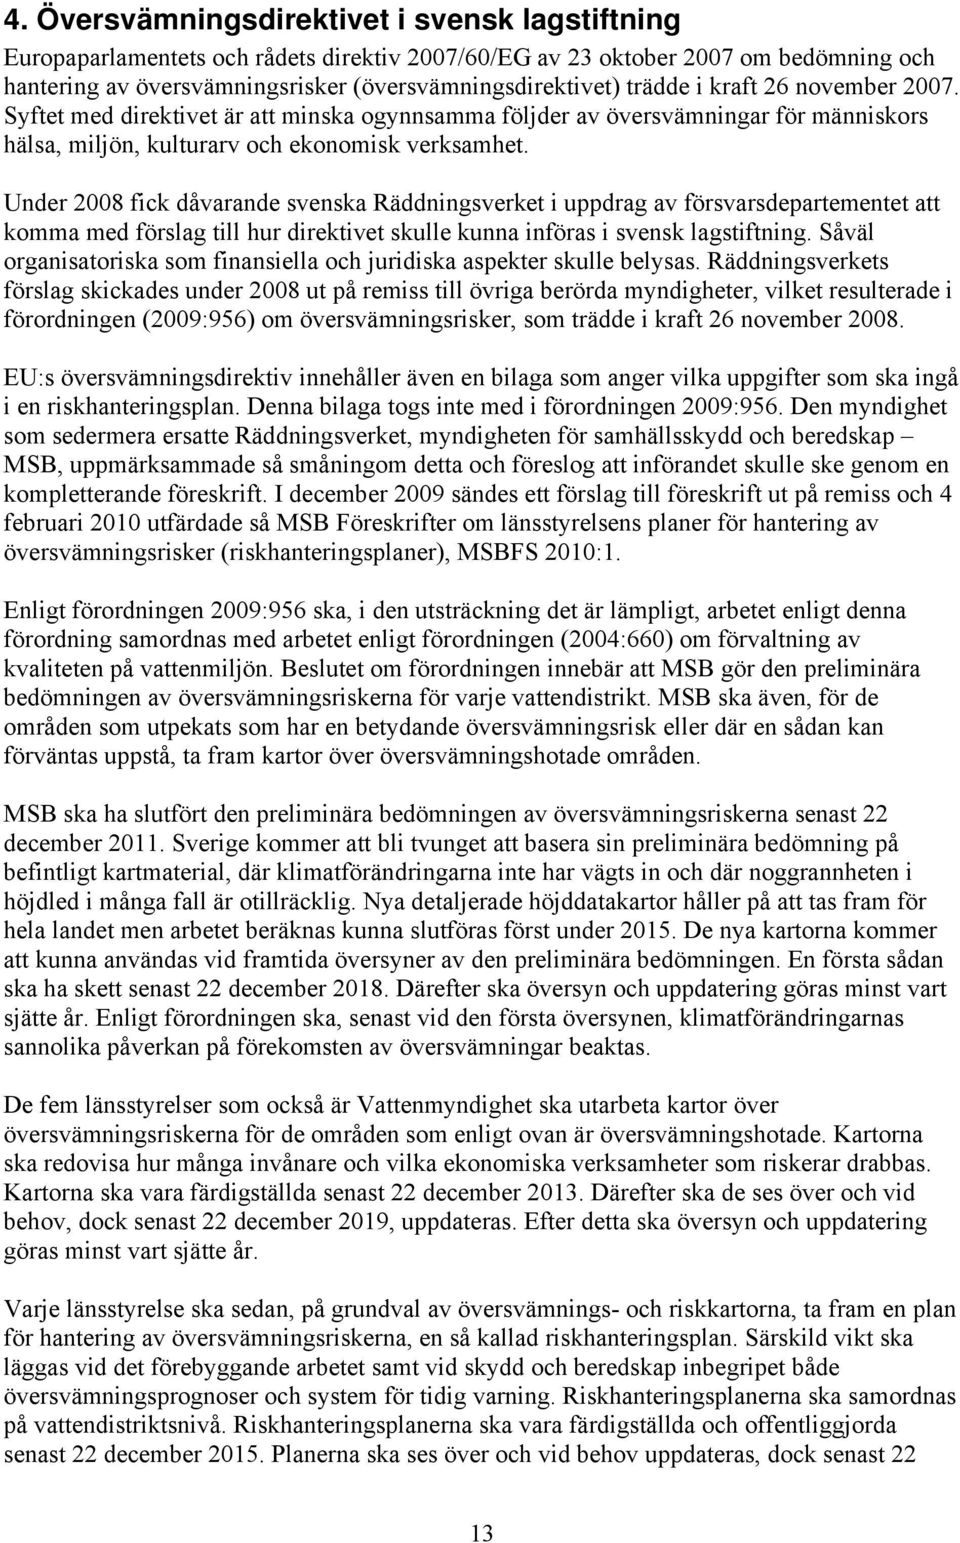 Under 2008 fick dåvarande svenska Räddningsverket i uppdrag av försvarsdepartementet att komma med förslag till hur direktivet skulle kunna införas i svensk lagstiftning.